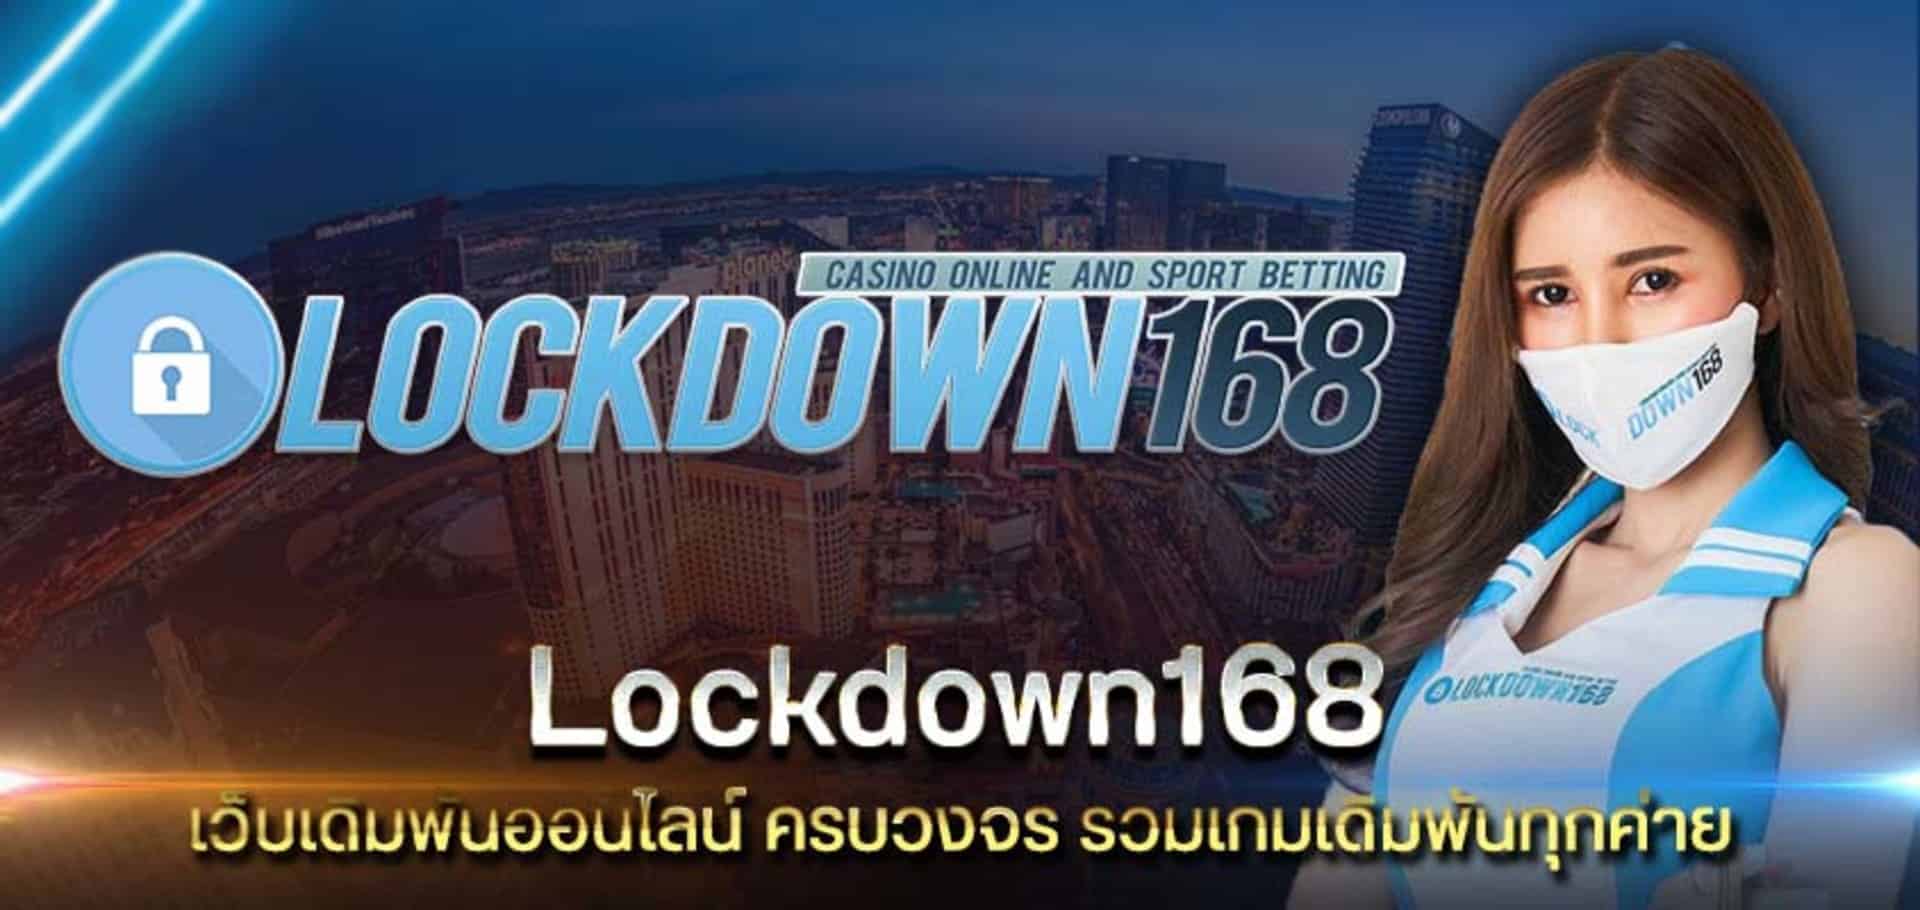 You are currently viewing Lockdown168 เว็บรวมคาสิโนออนไลน์  รวมเกมพนันทุกค่าย